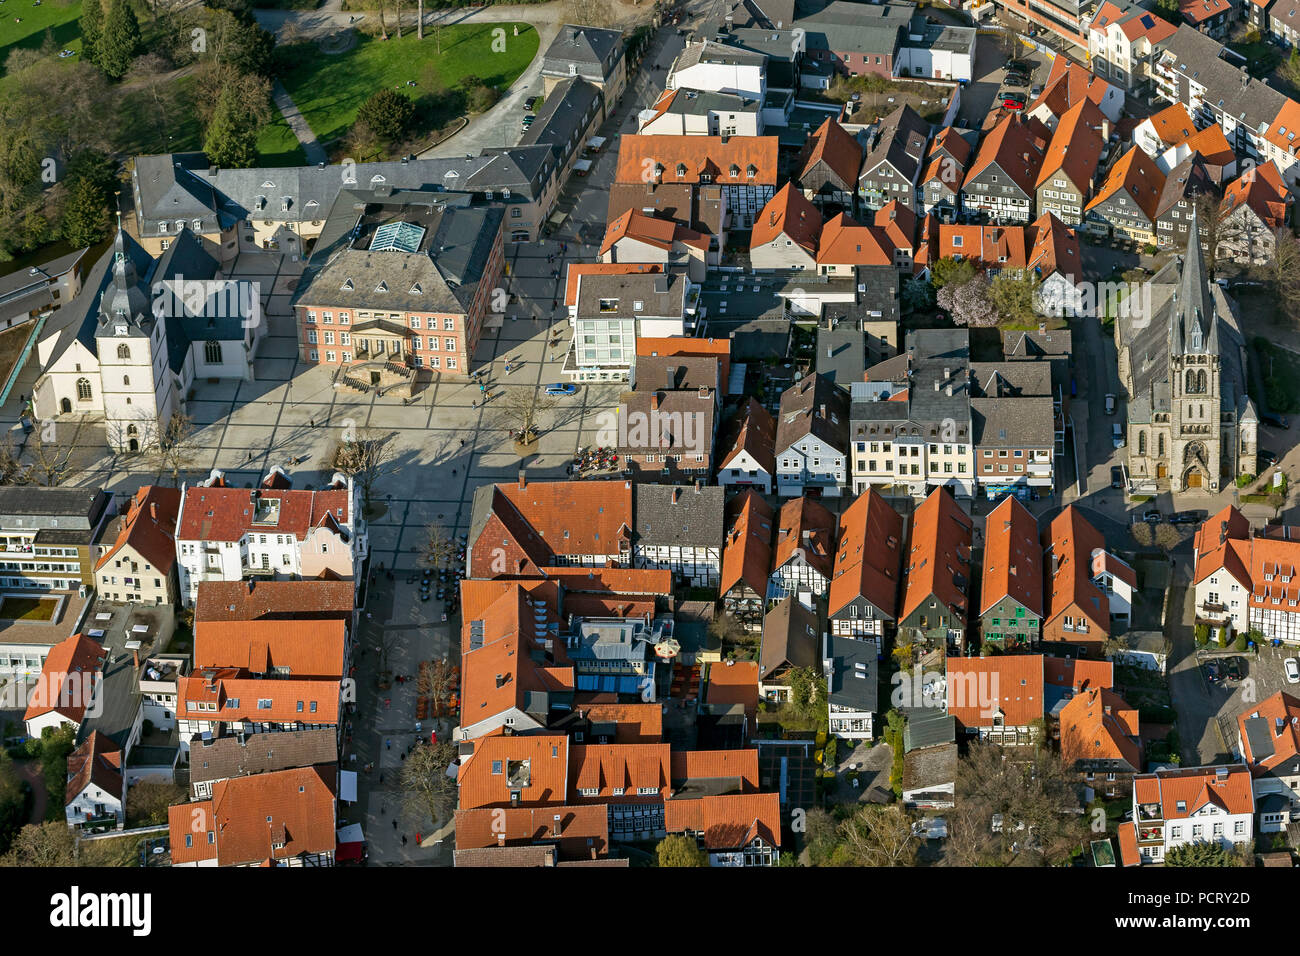 La nueva plaza del mercado con Erlöserkirche y Martin Luther Kirche, foto aérea de Detmold Foto de stock